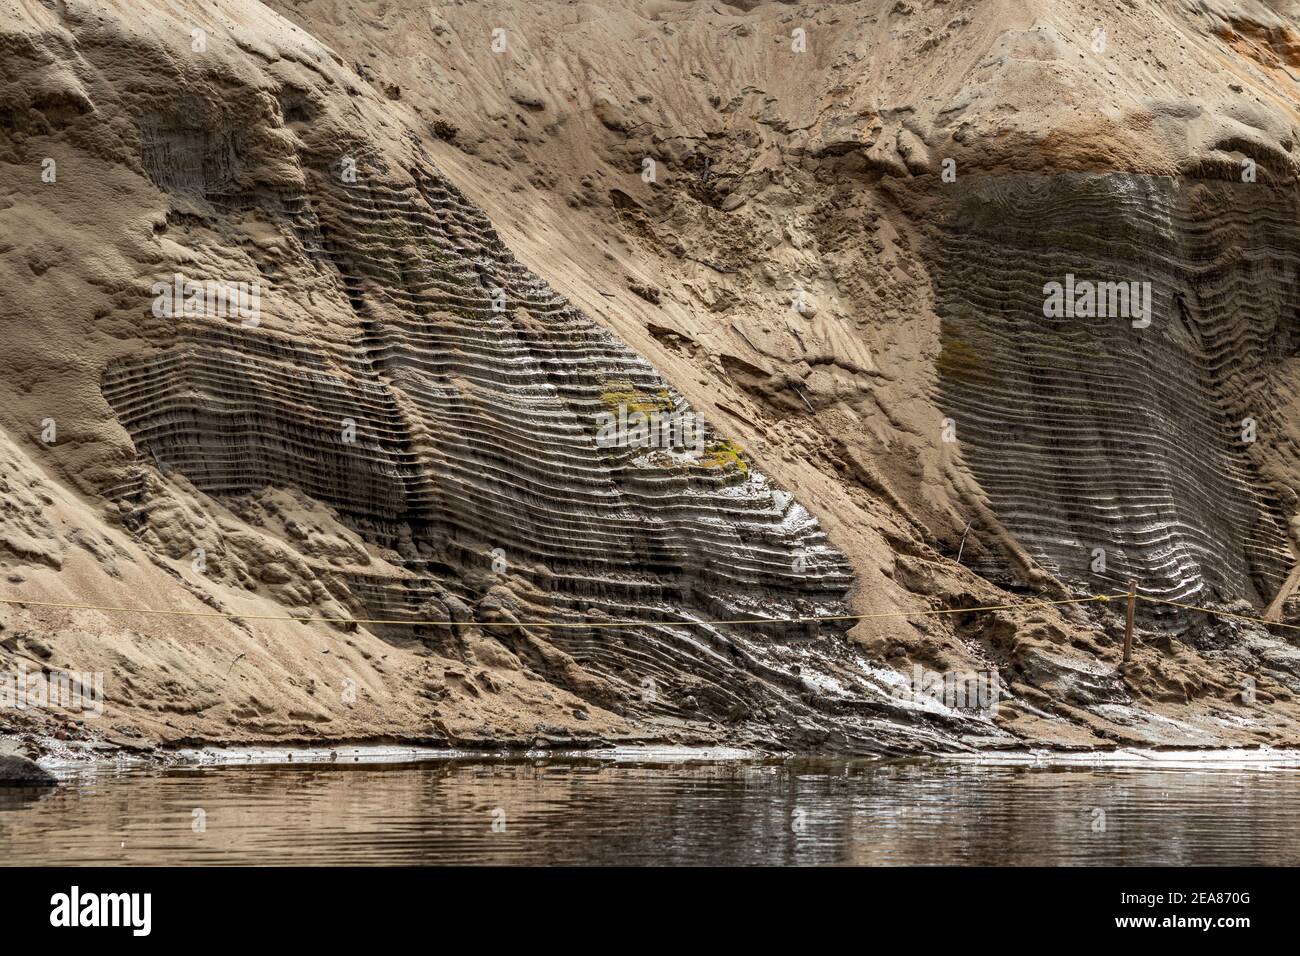 A lo largo del río Devil's en el Parque Nacional Mont Tremblant, el río ha erosionado la orilla para formar pequeños escalones. La arena de las horas extraordinarias ha llegado a cubrir la mayor parte de ella Foto de stock